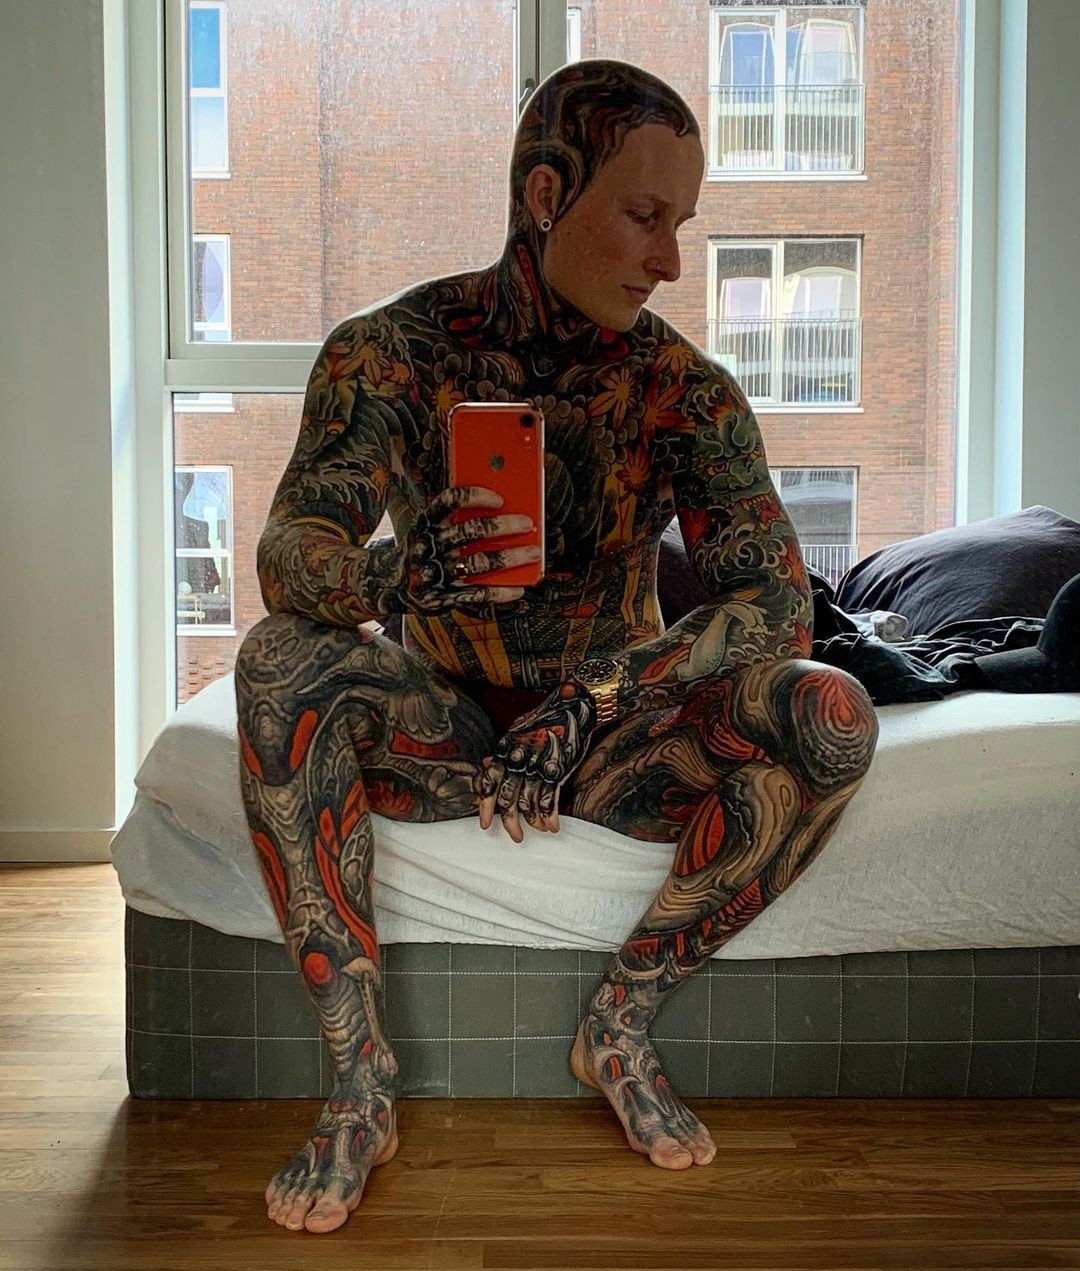 Tristan Weigelt diz que as mulheres se assustam com suas tatuagens (Foto: Reprodução / Instagram)